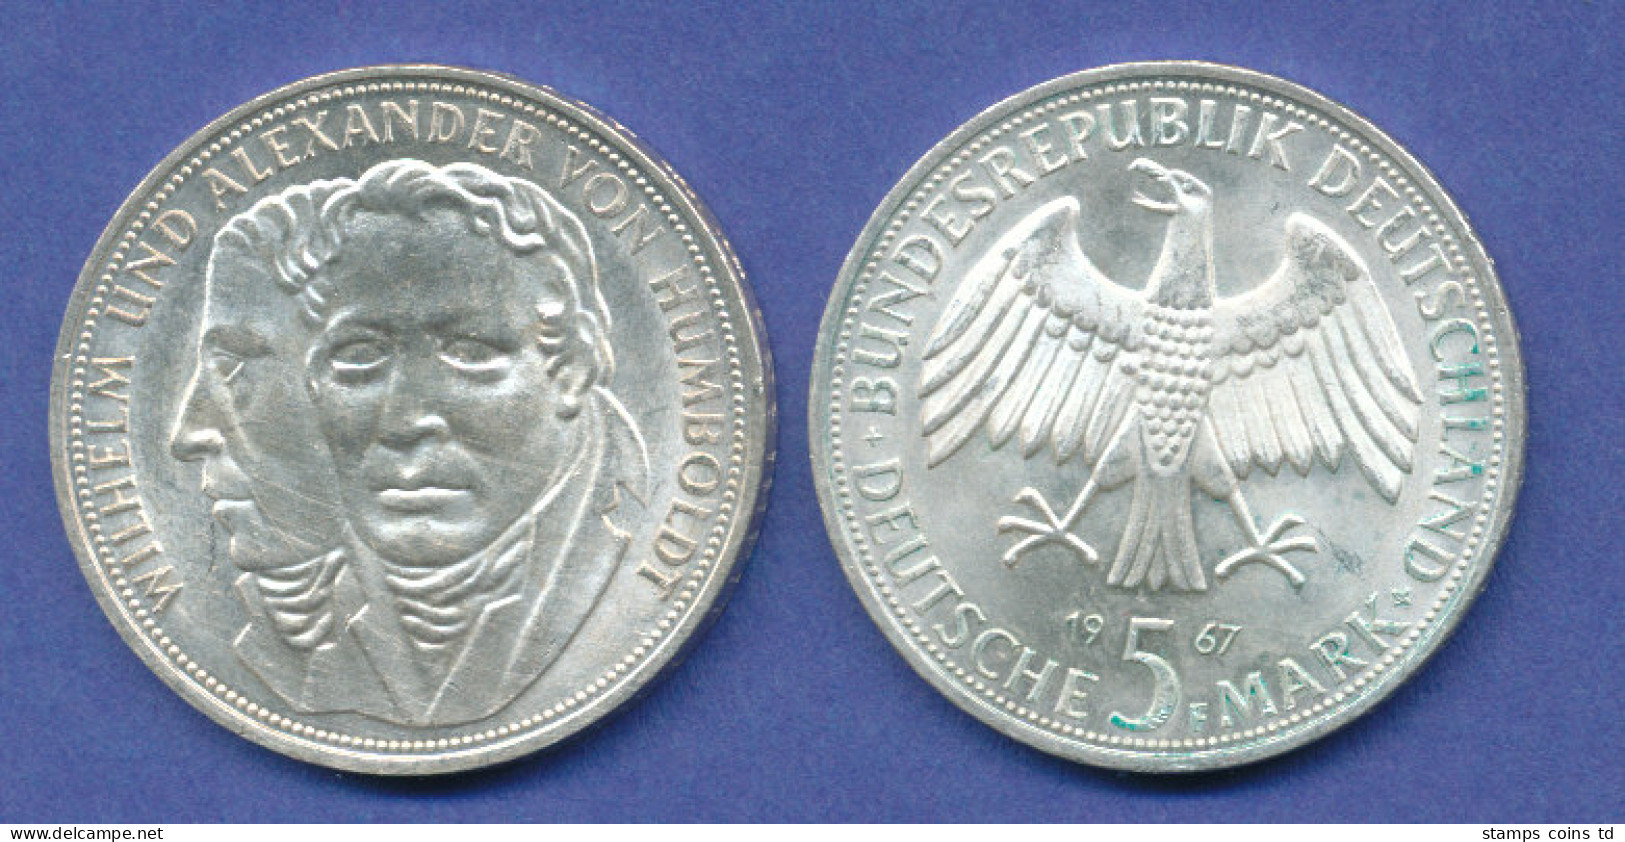 Bundesrepublik 5DM Silber-Gedenkmünze 1967, Wilhelm / Alexander Von Humboldt - 5 Marcos